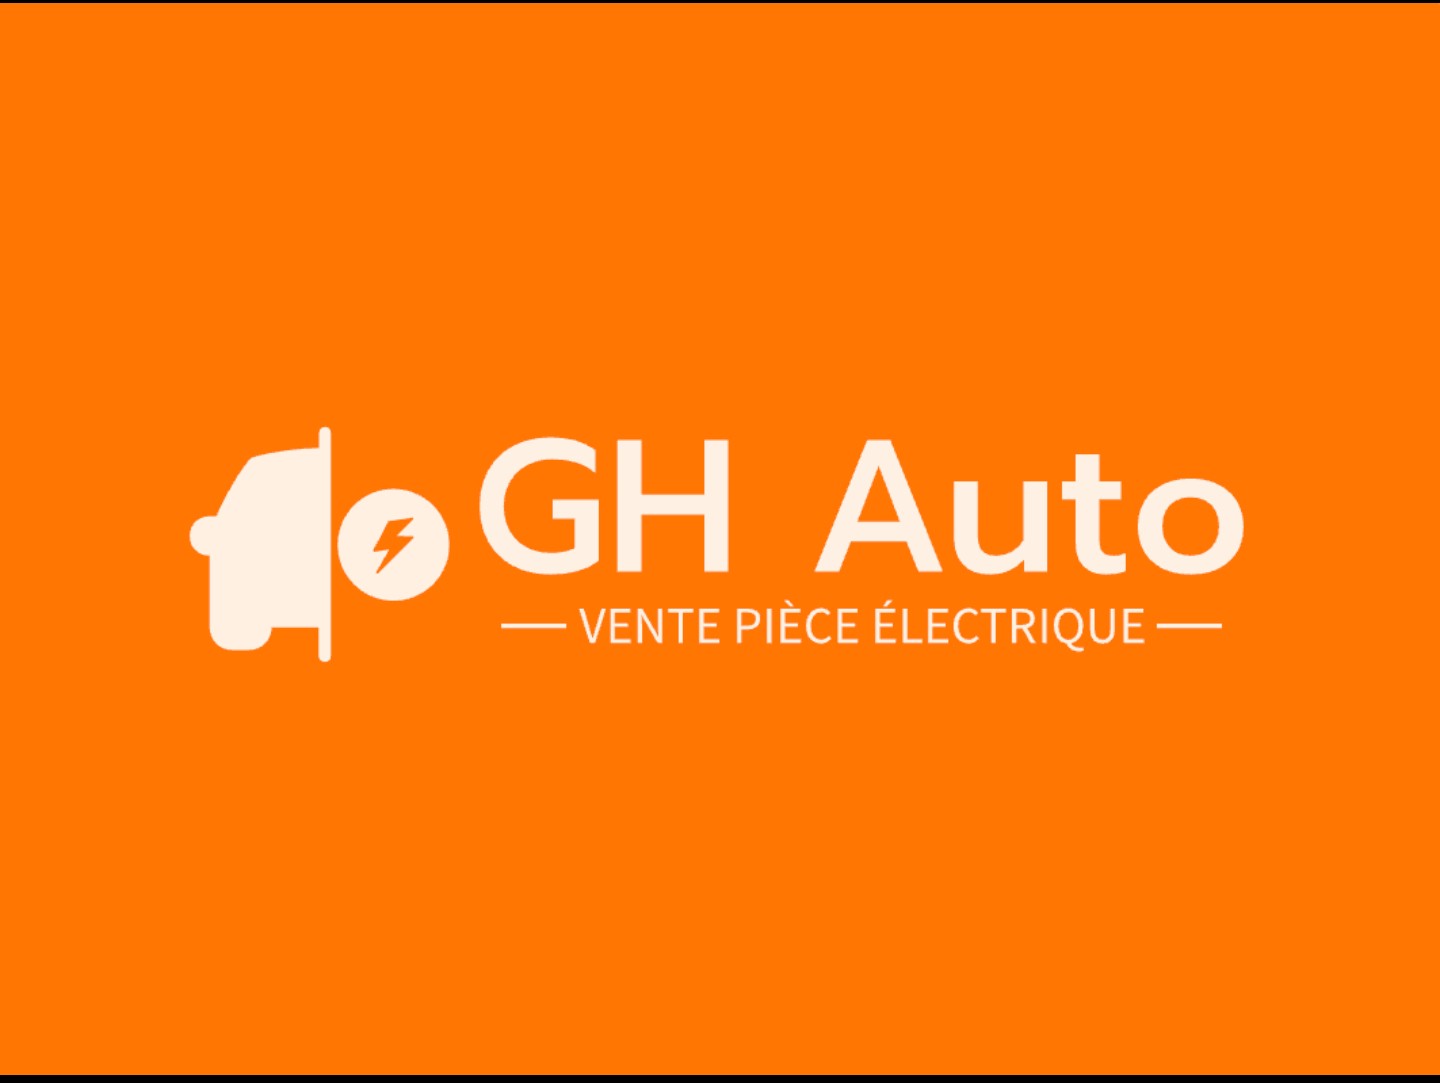 Gherbi pièce électrique auto (GH Auto)